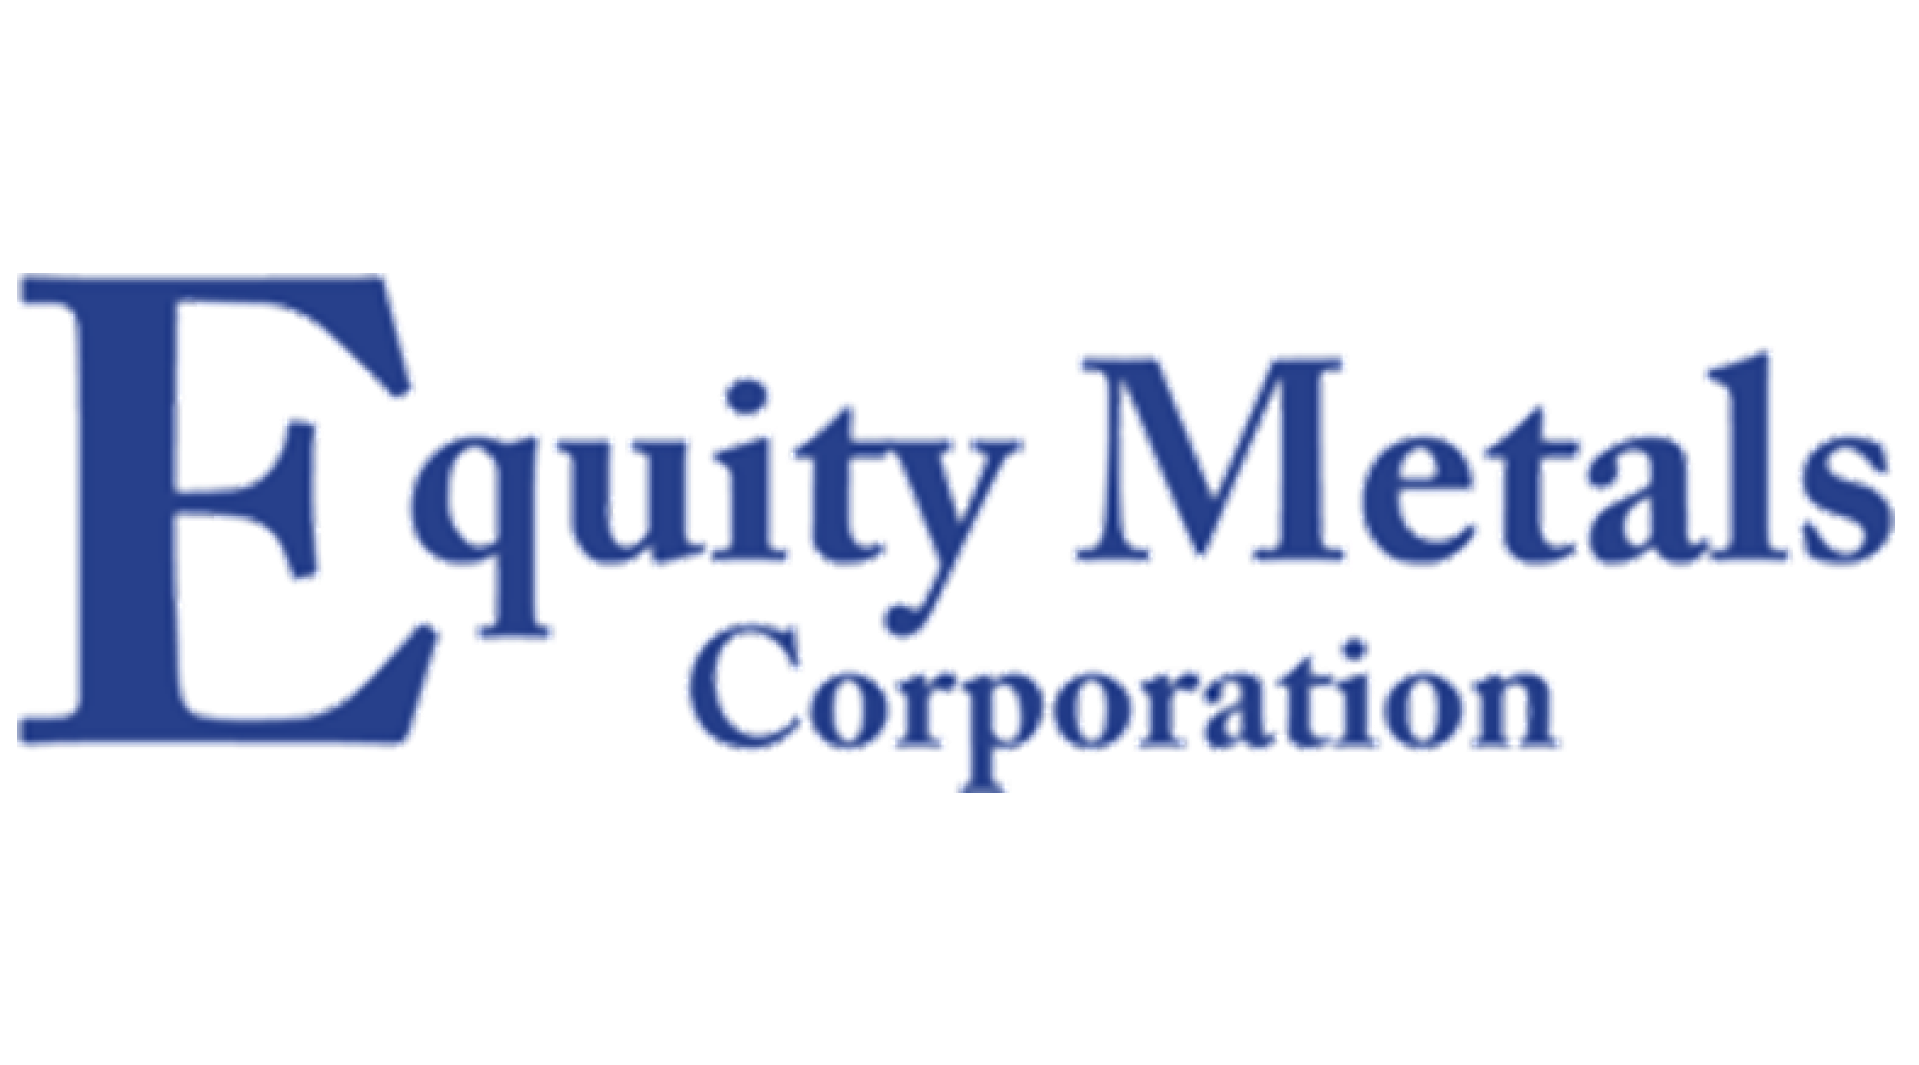 Equity Metals Corporation